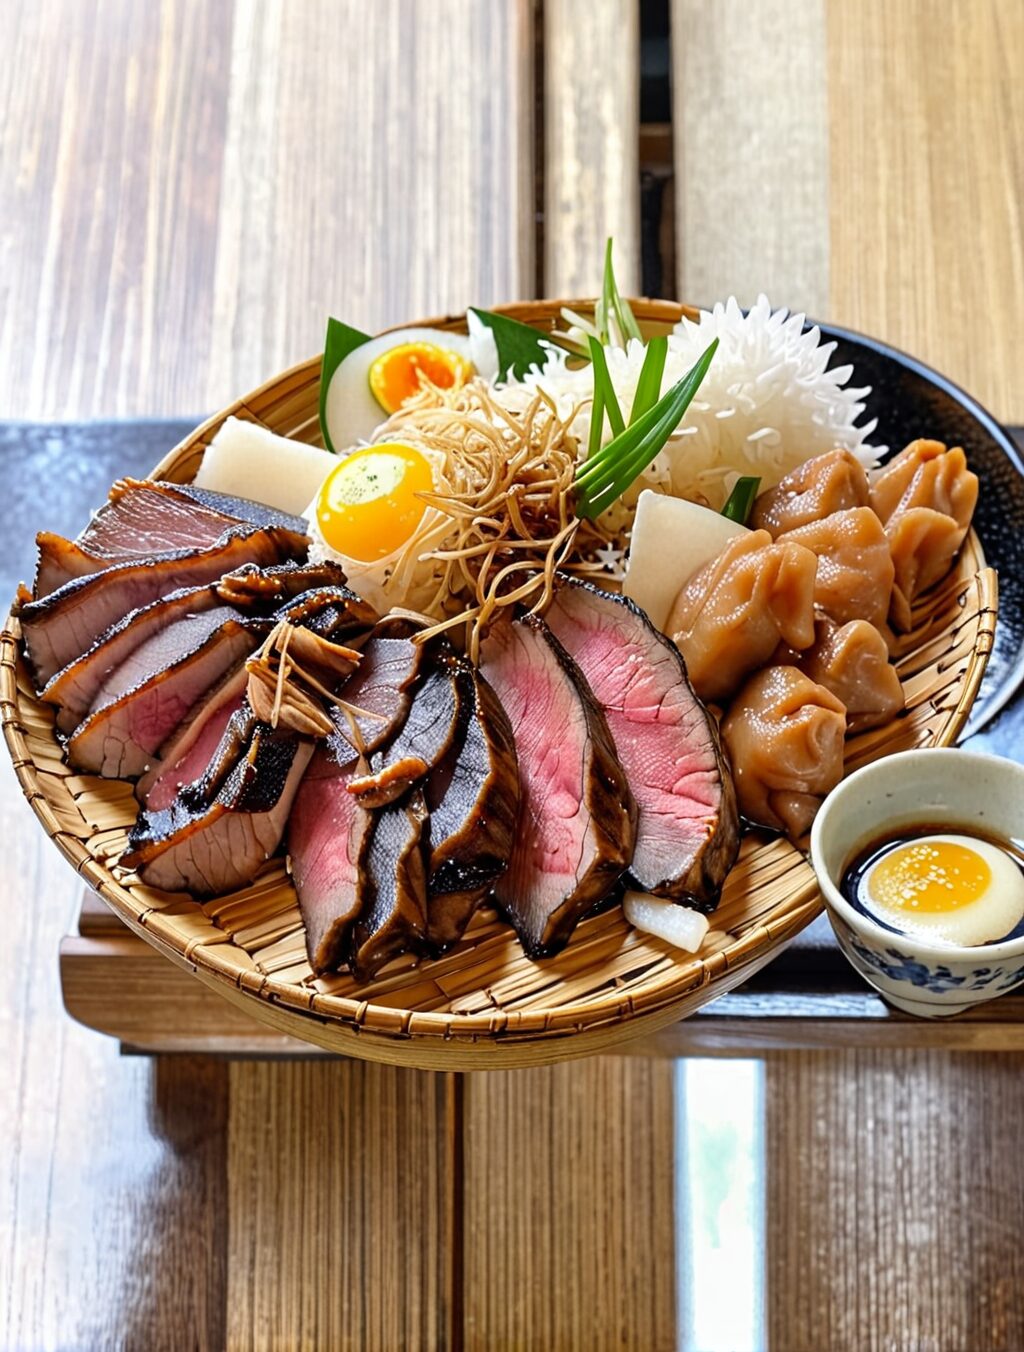 best food in nara japan